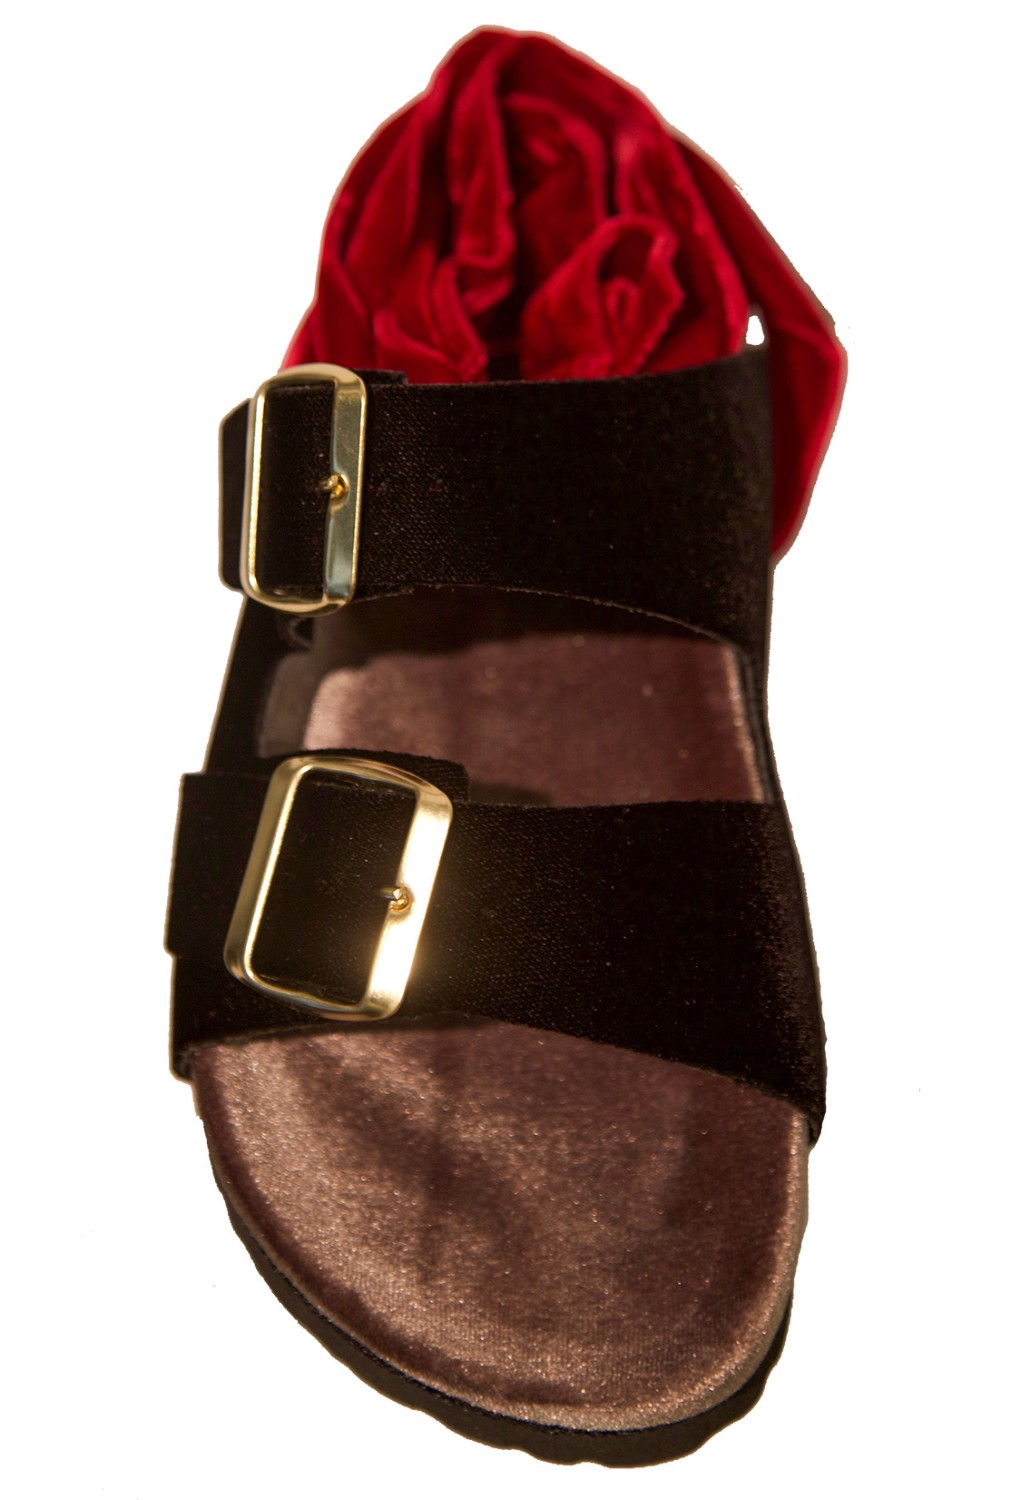 shop Gia Couture Saldi Scarpe: Sandalo Gia Couture, in velluto, dettaglio laccio in rosso, fasce in nero e suola color sabbia.

Composizione: 100% velluto.
Suola: 100% gomma. number 1258